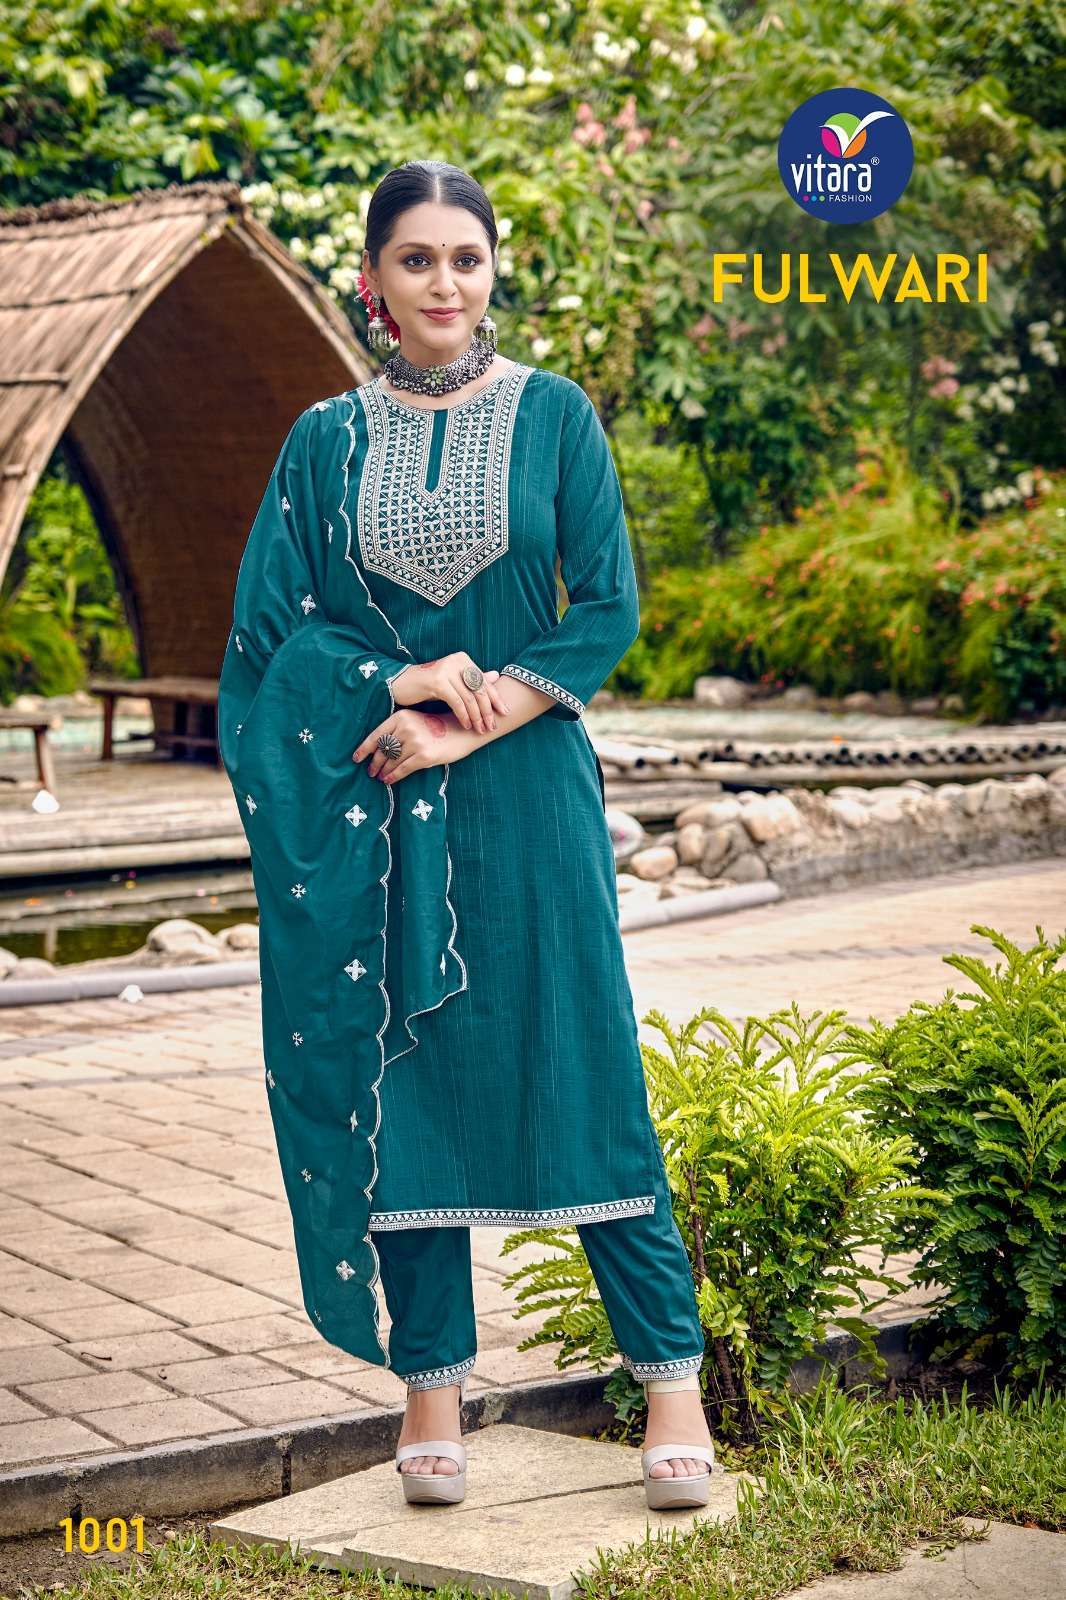 vitara fashion fulwari series 1001-1004 viscose suit